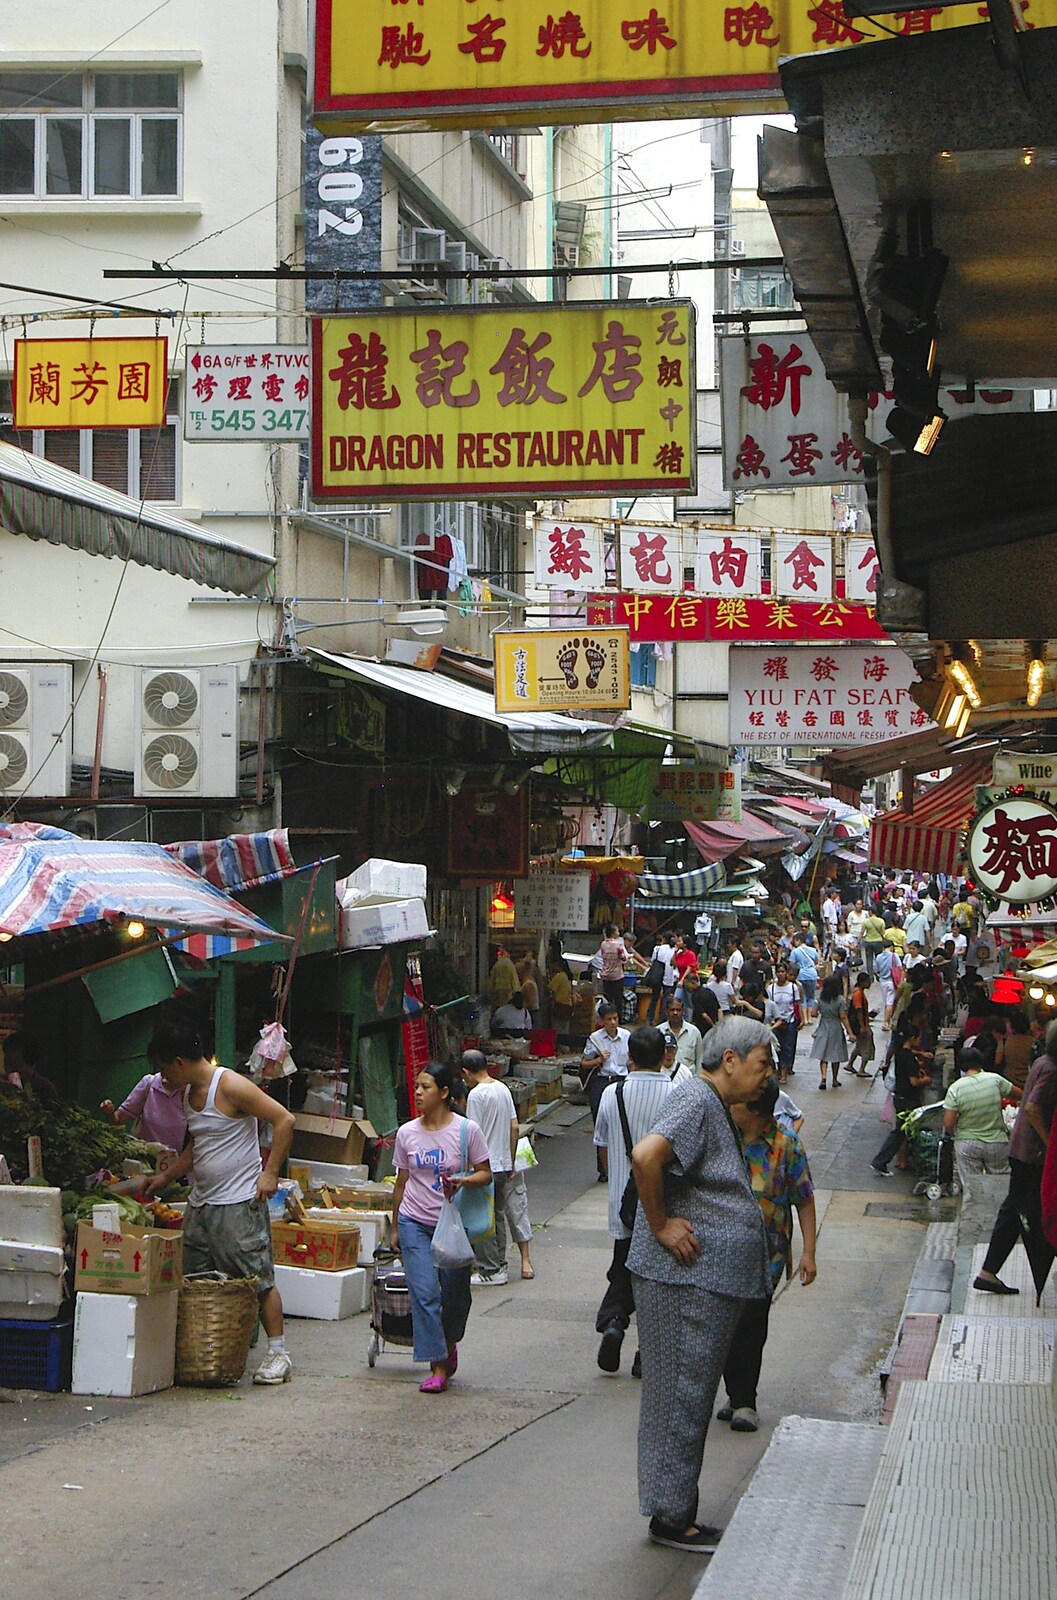 Market streets from Lan Kwai Fong Market, Hong Kong, China - 4th October 2006